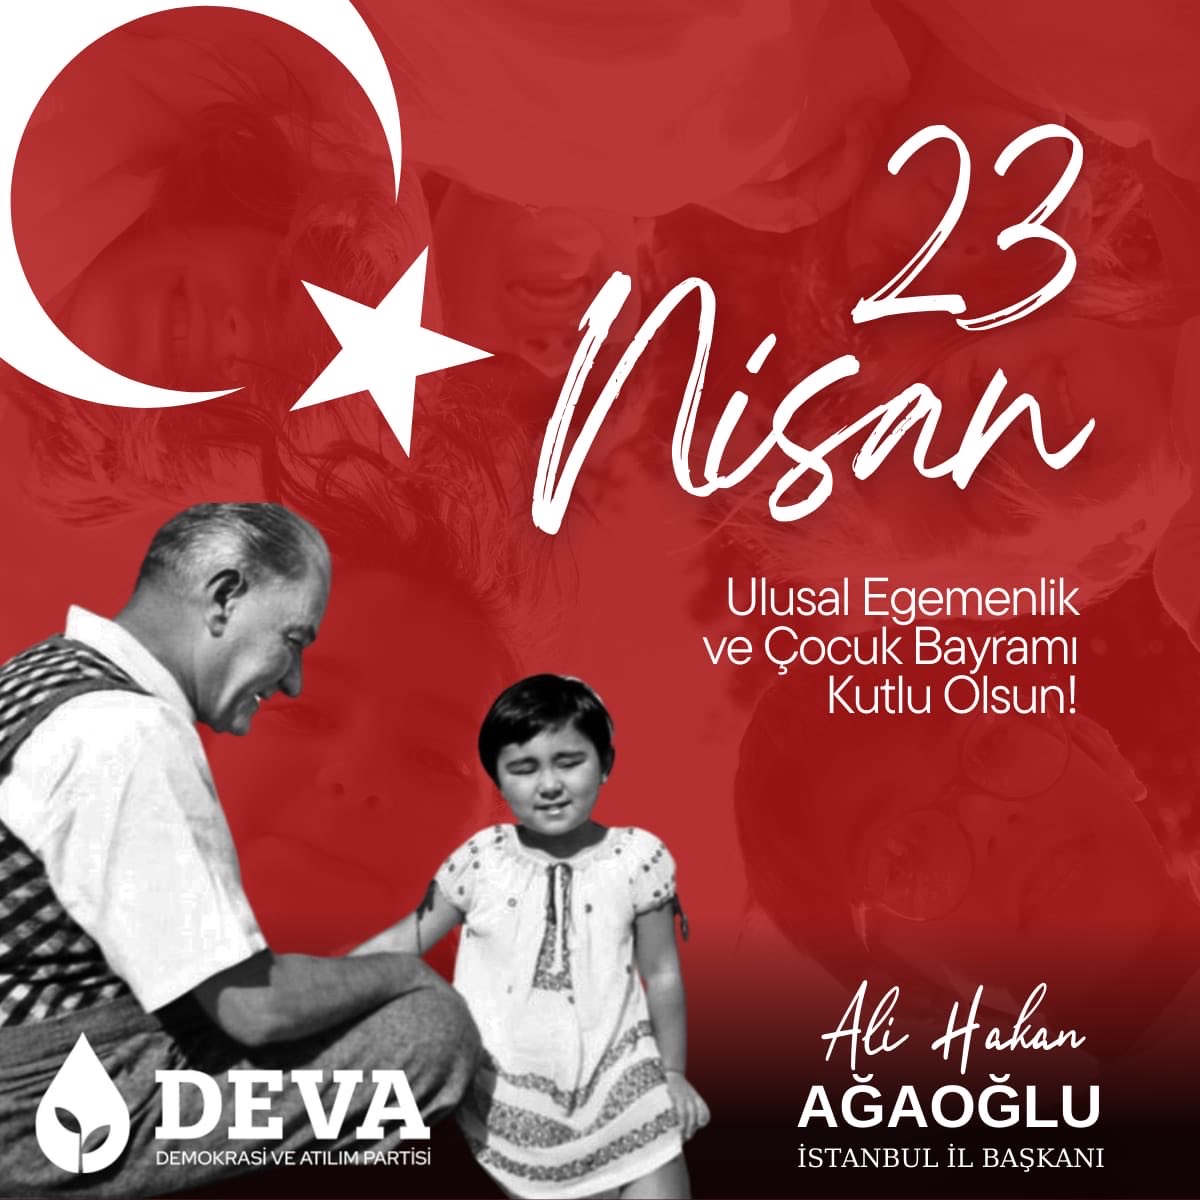 TBMM 'nin kuruluşunun 104.yılı ve #23Nisan Ulusal Egemenlik ve Çocuk Bayramımız kutlu olsun. Bu günü dünya çocuklarına armağan eden Gazi Mustafa Kemal Atatürk'ü ve yol arkadaşlarını saygı ve minnetle anıyoruz.